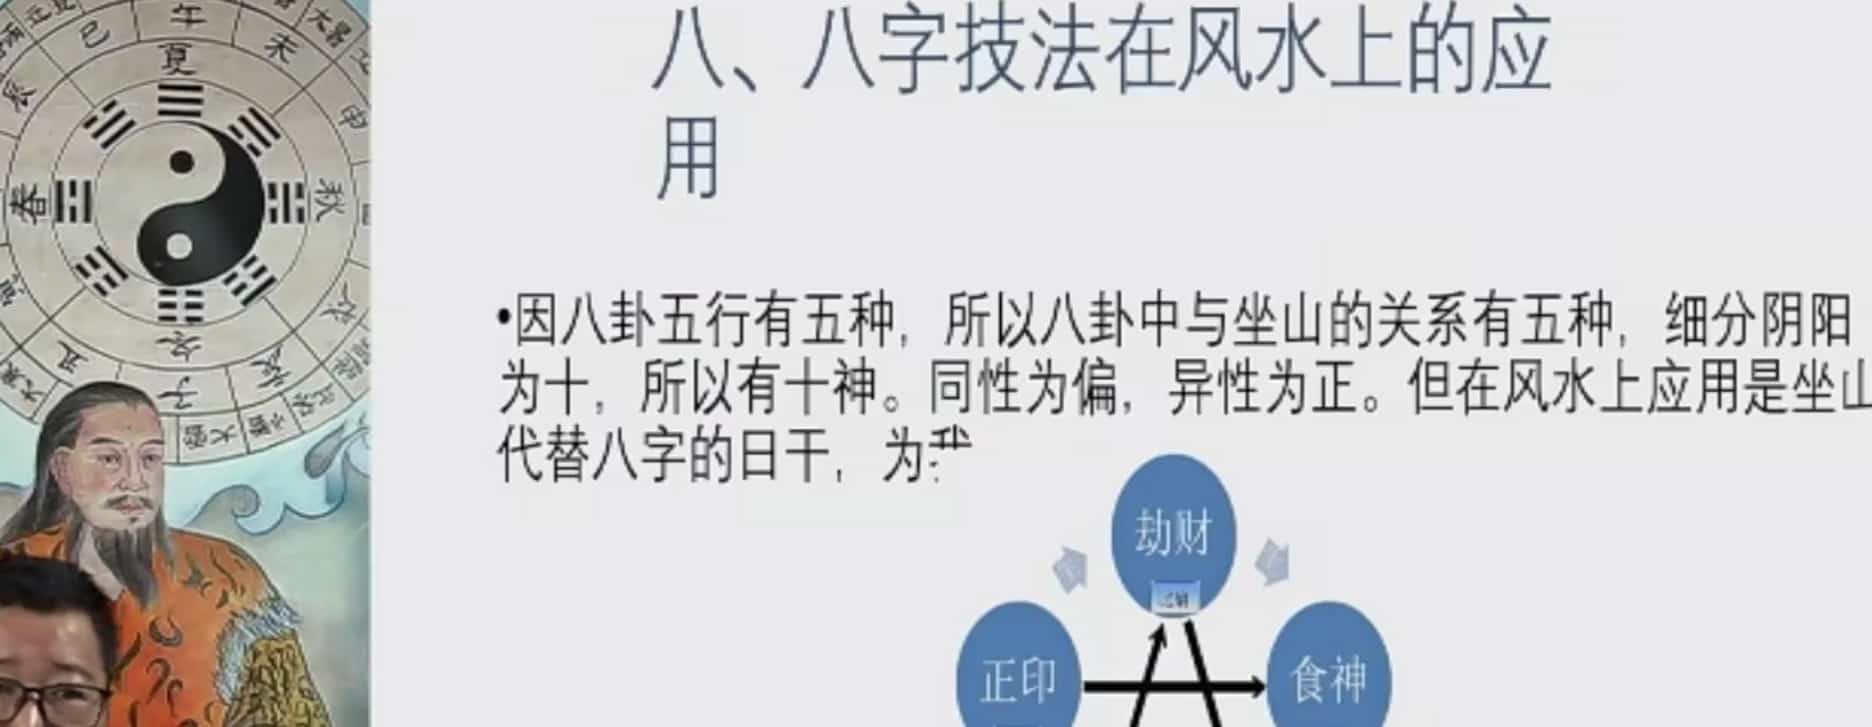 谢欣宏弟子班合集杨公风水密训班视频+录音插图